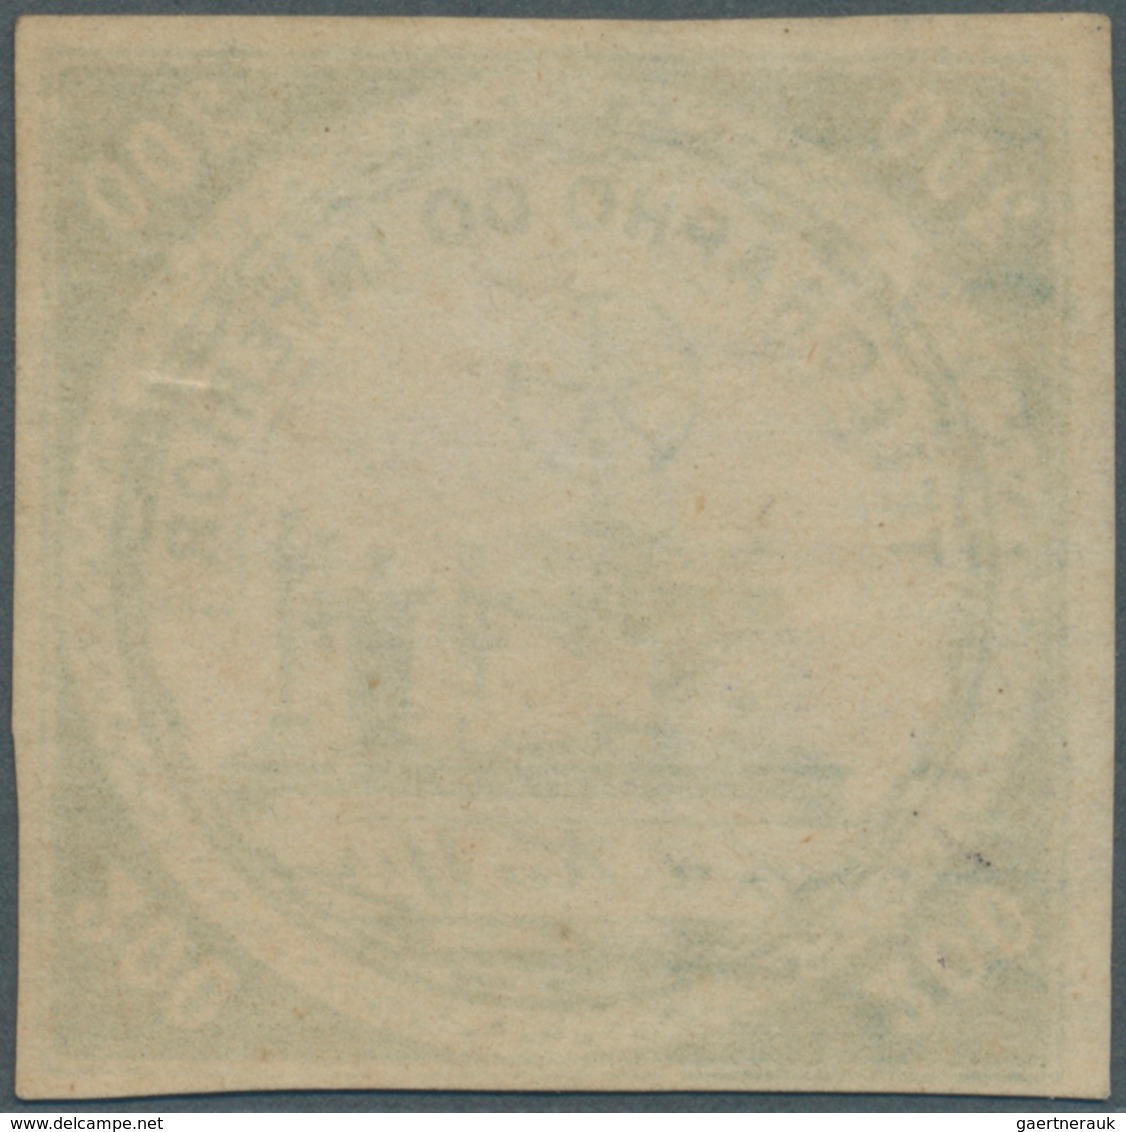 00586 Brasilien - Telegrafenmarken: 1873, 200r. Yellow-green, Wm "Lacroix Freres", Fresh Colour, Full Marg - Telegraphenmarken